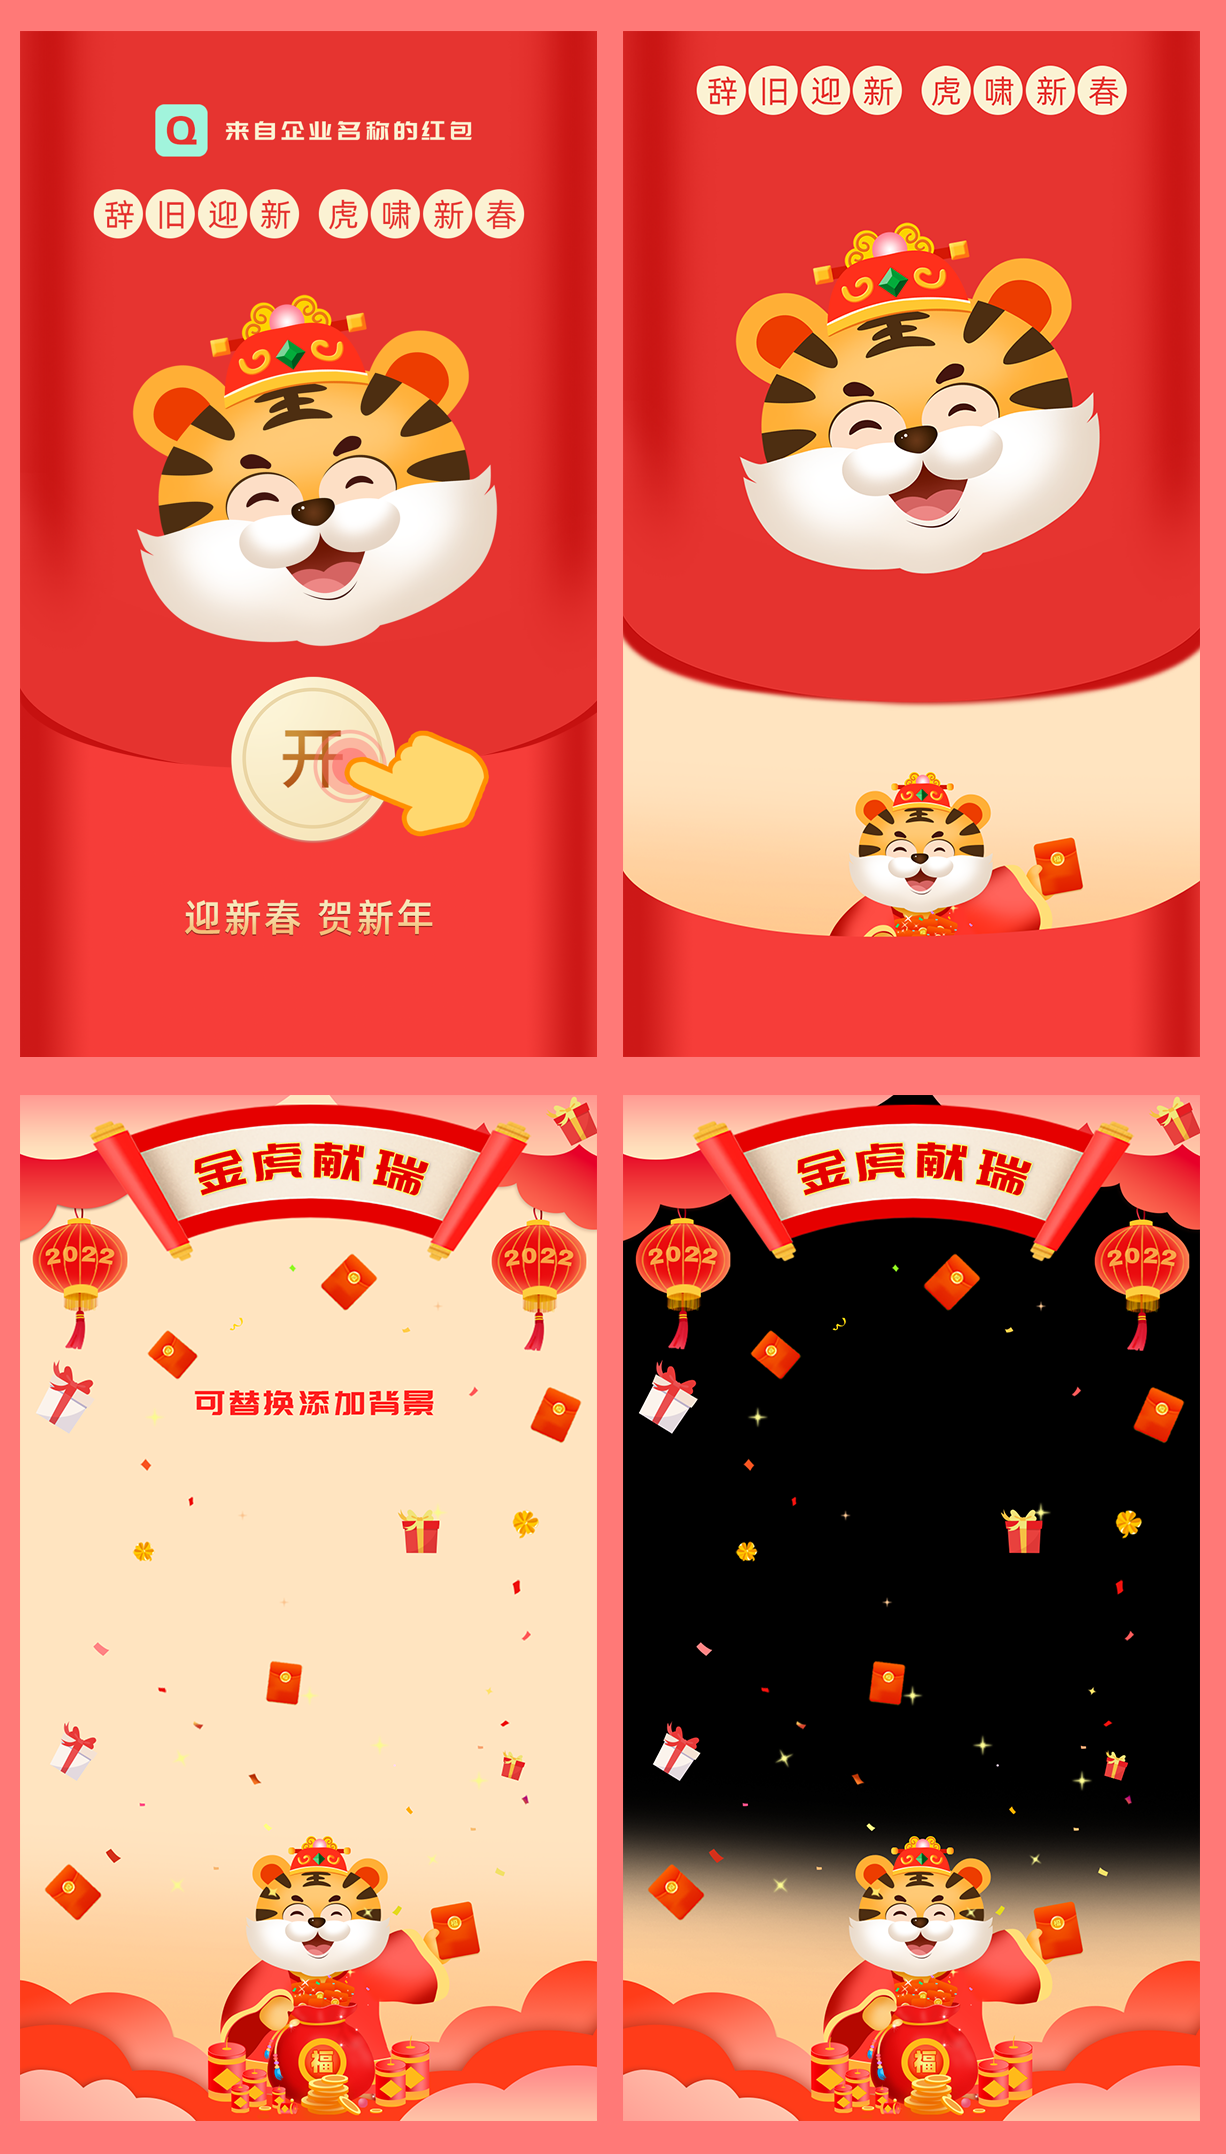 2022中国红竖屏手机春节拜年发红包视频